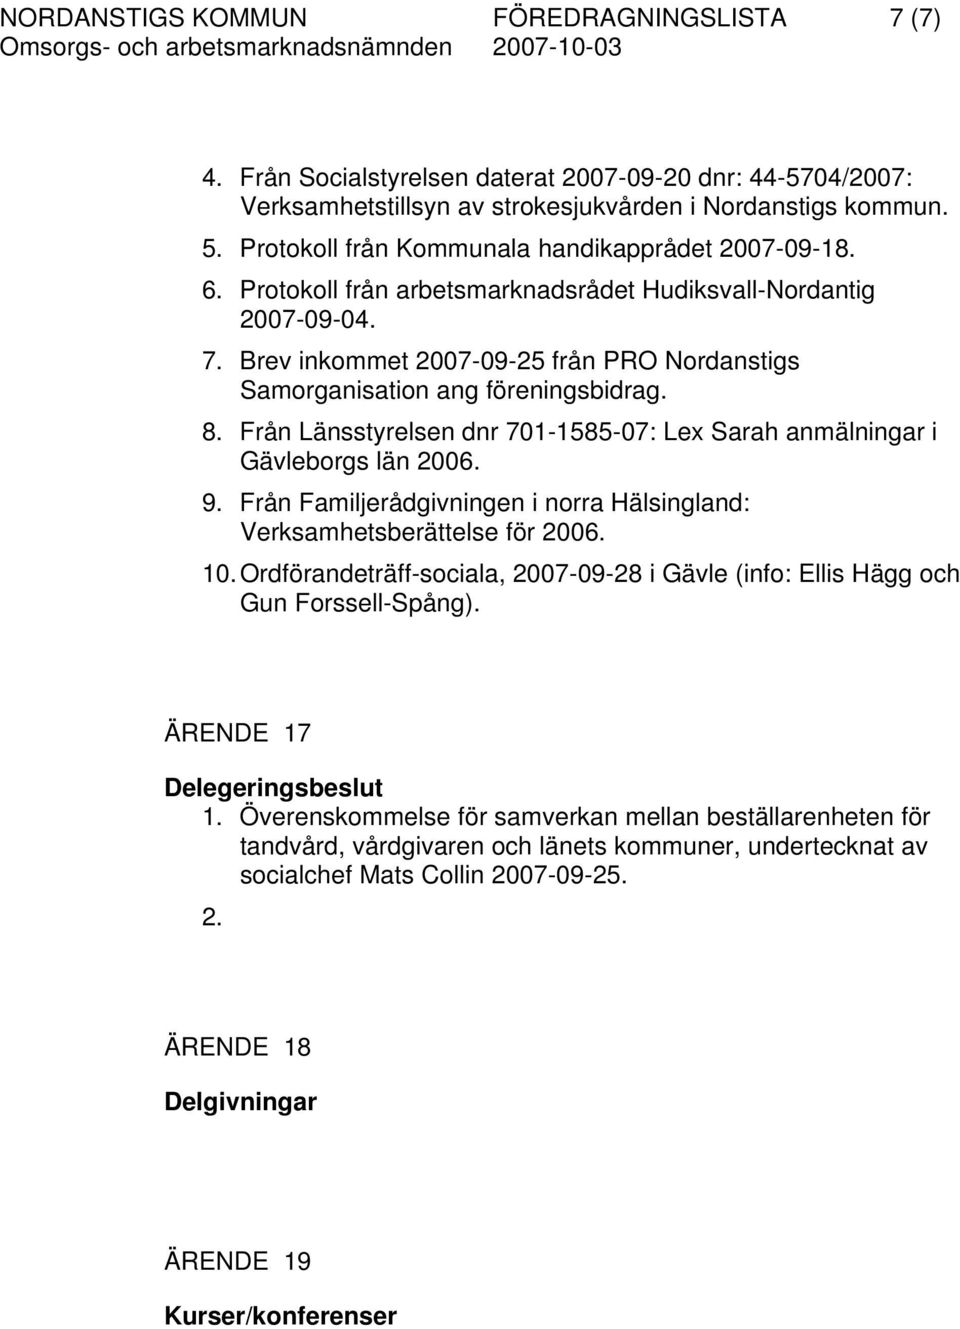 Brev inkommet 2007-09-25 från PRO Nordanstigs Samorganisation ang föreningsbidrag. 8. Från Länsstyrelsen dnr 701-1585-07: Lex Sarah anmälningar i Gävleborgs län 2006. 9.